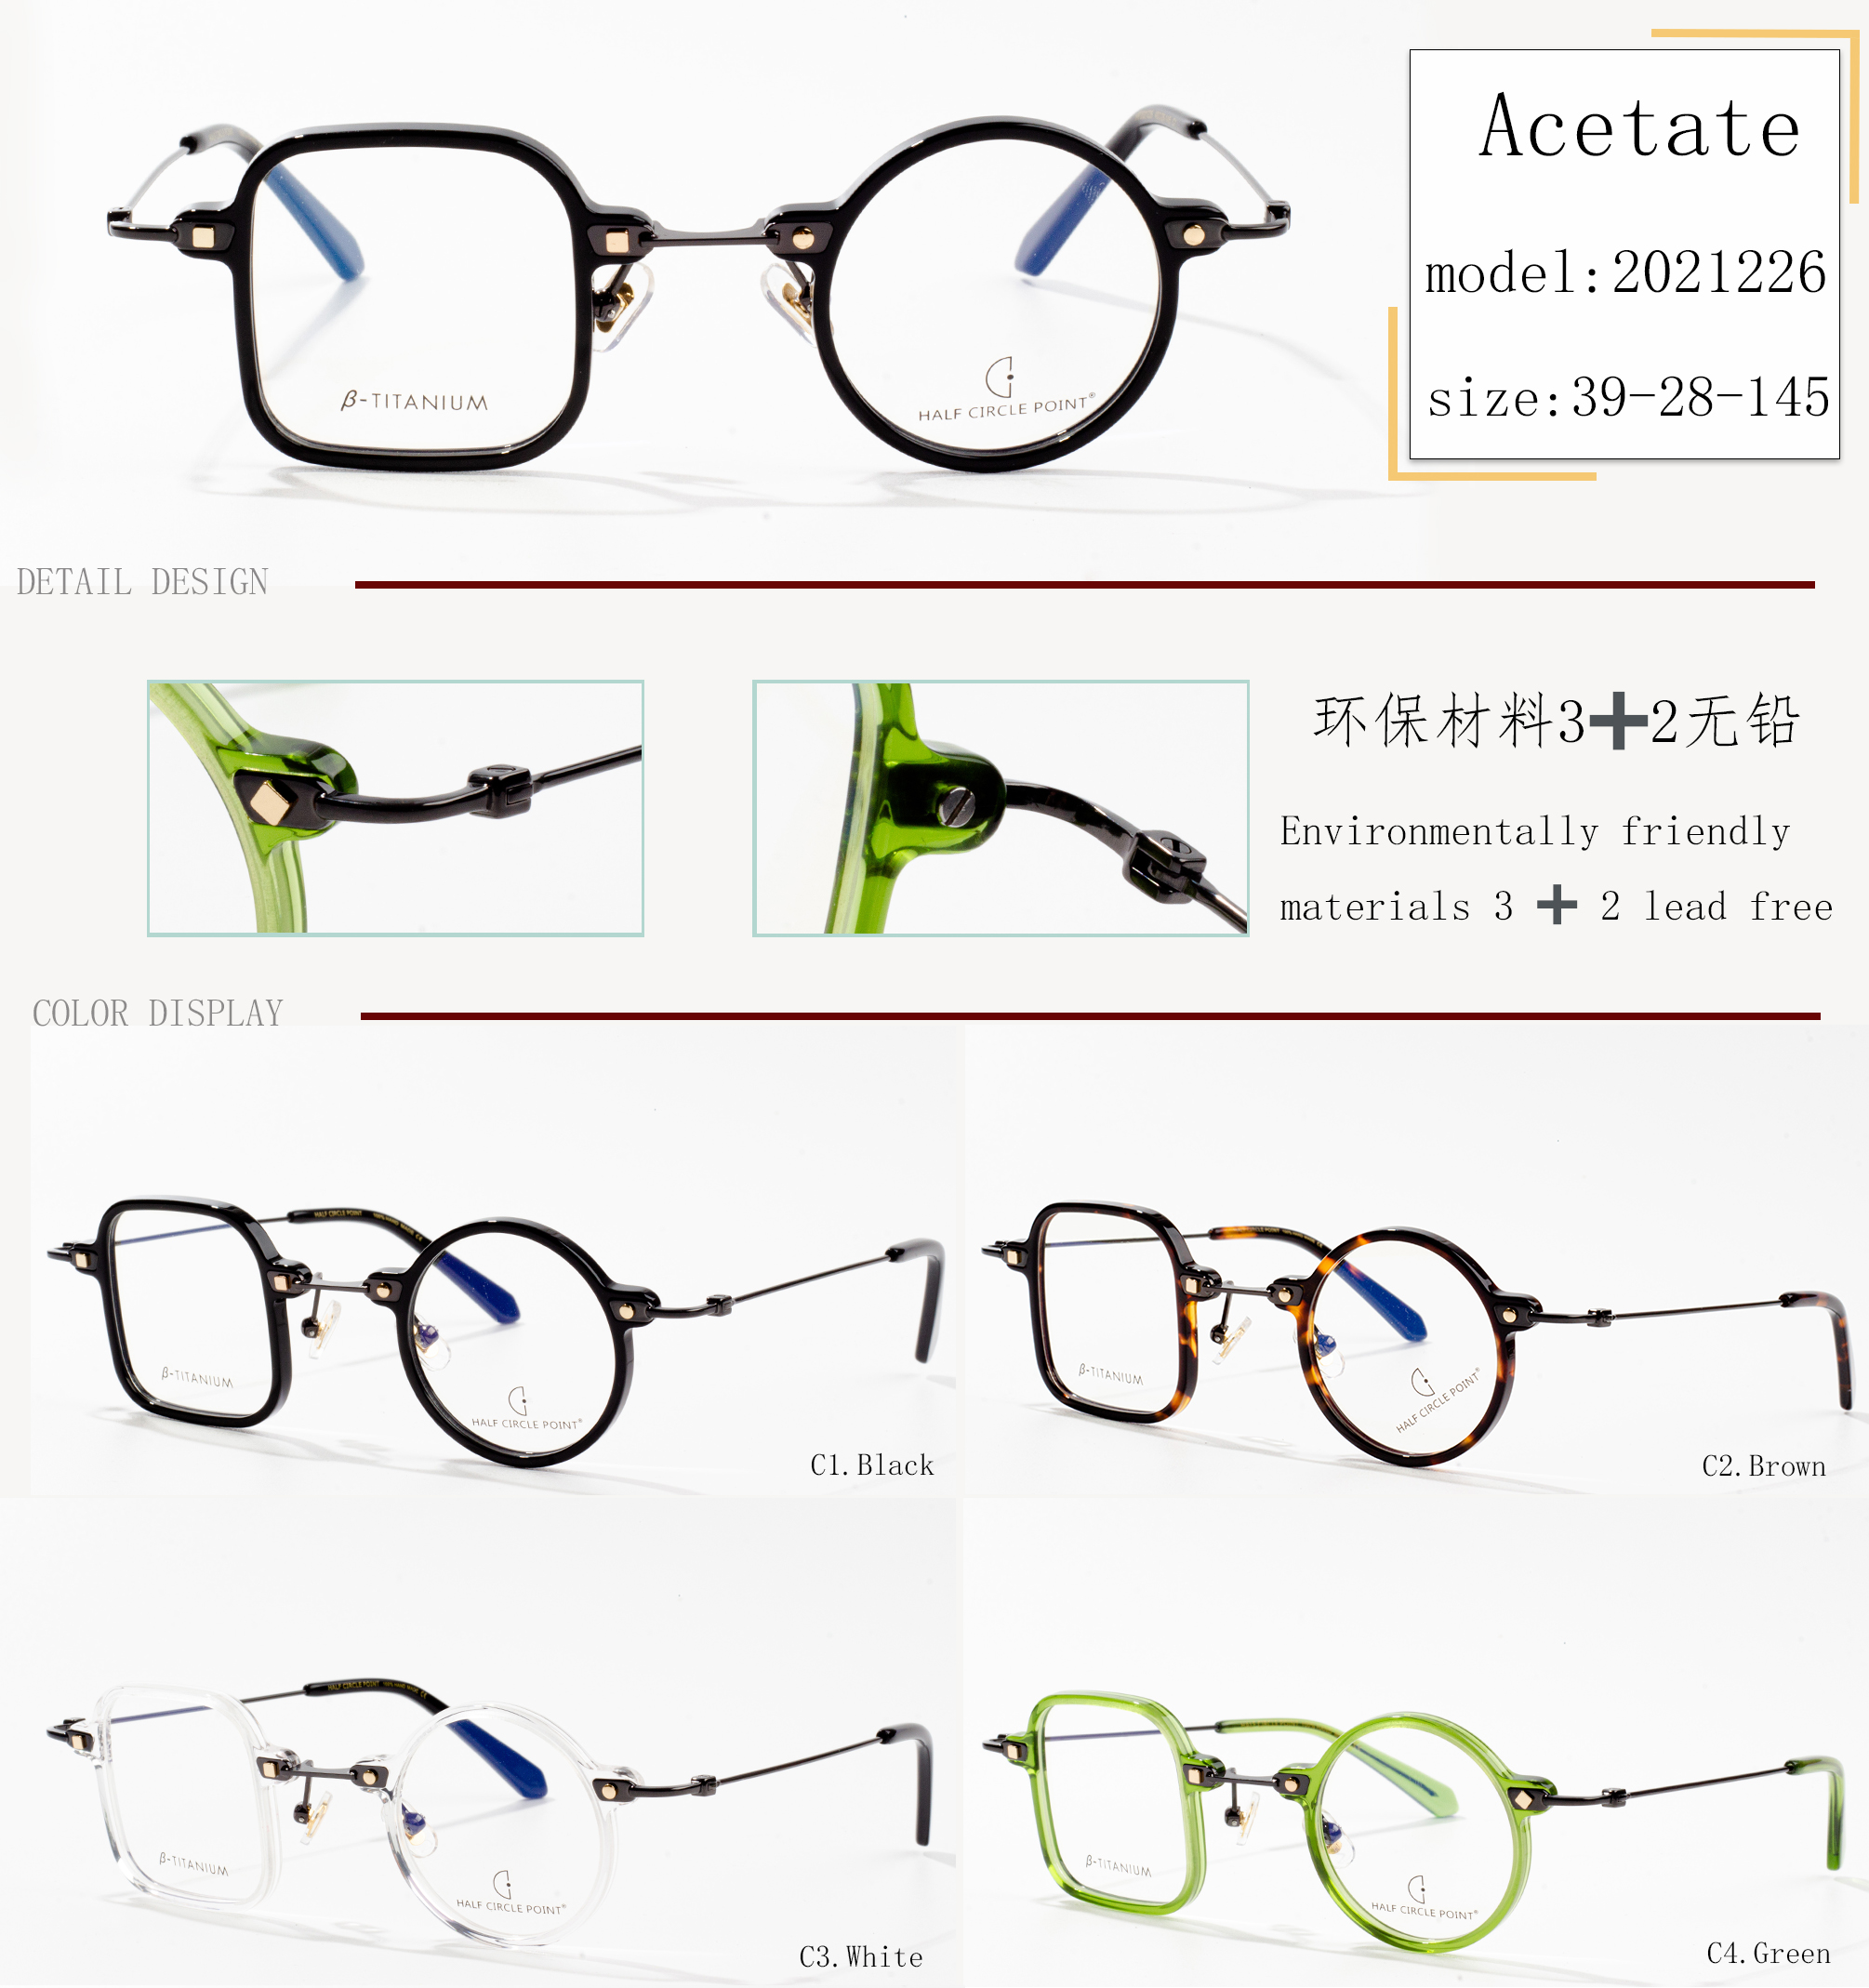 rama de ochelari din acetat